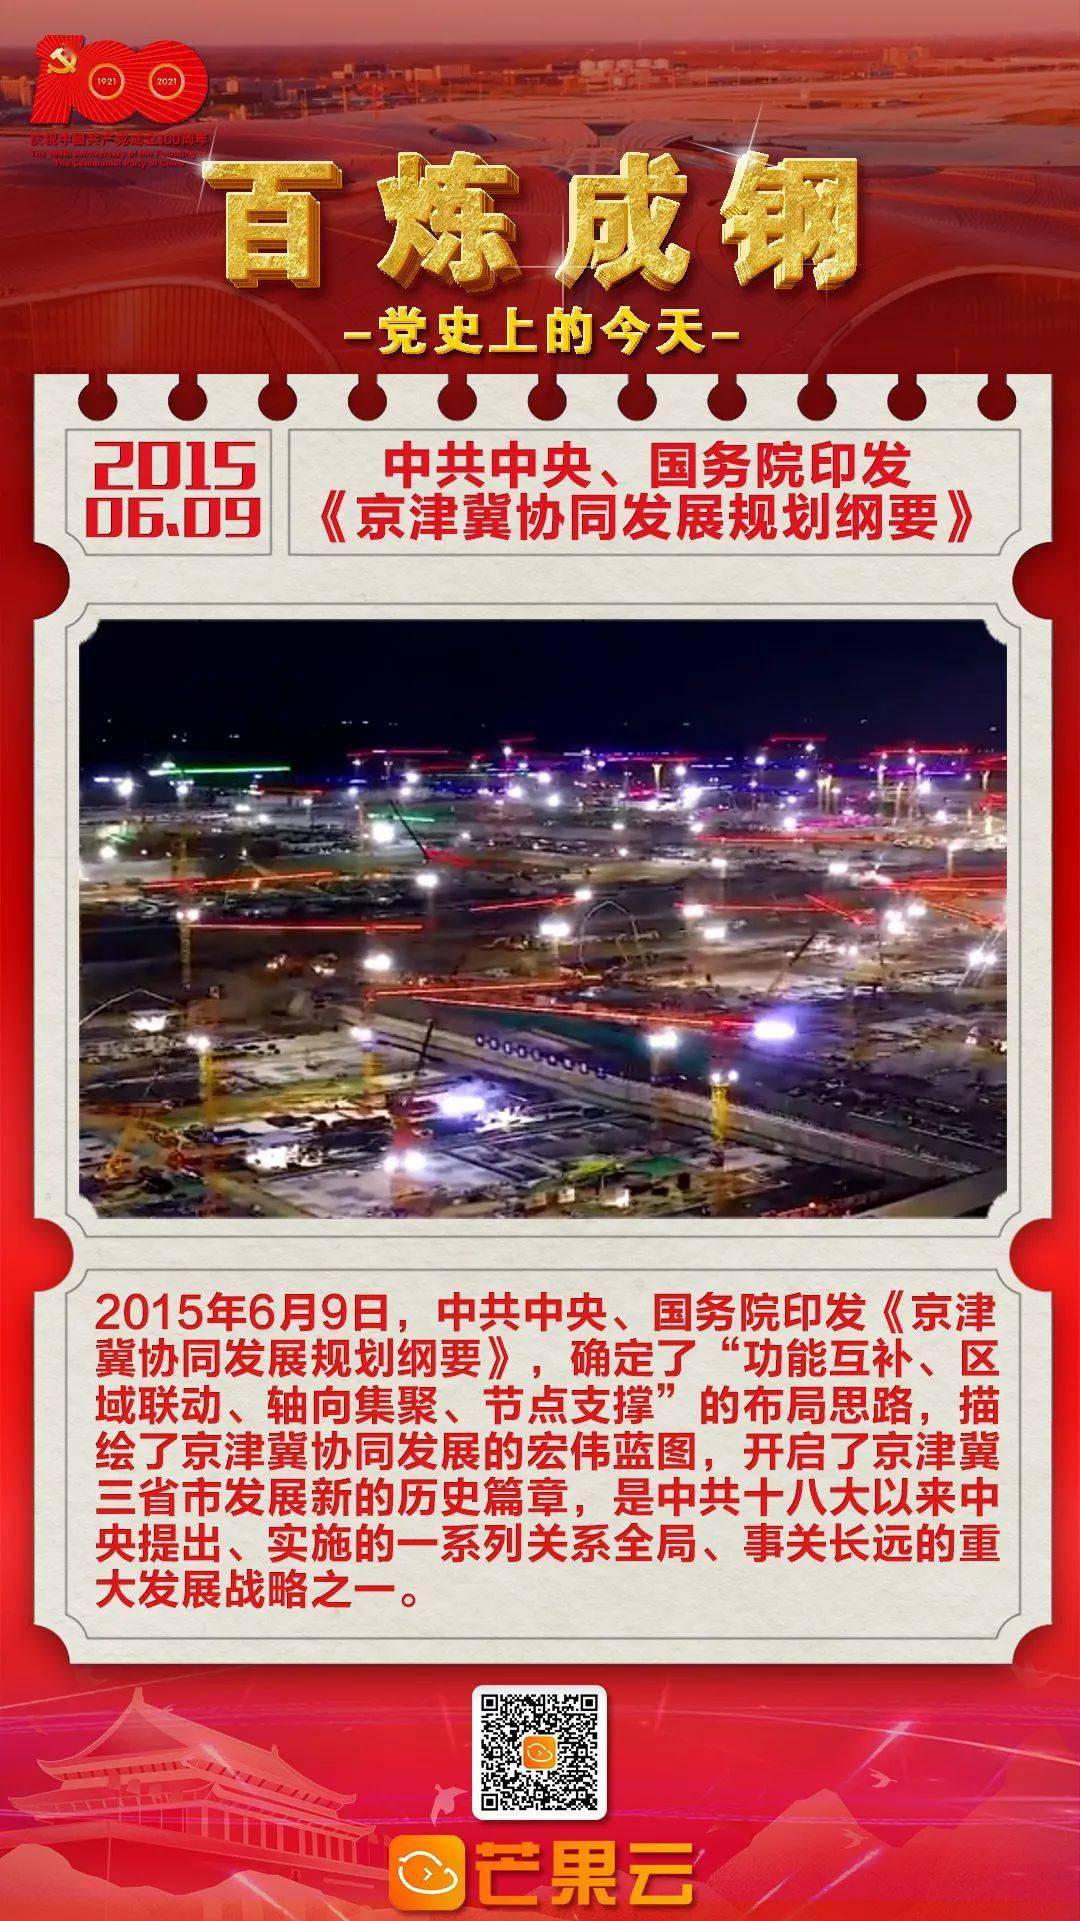 2015年6月9日,中共中央,国务院印发《京津冀协同发展规划纲要》